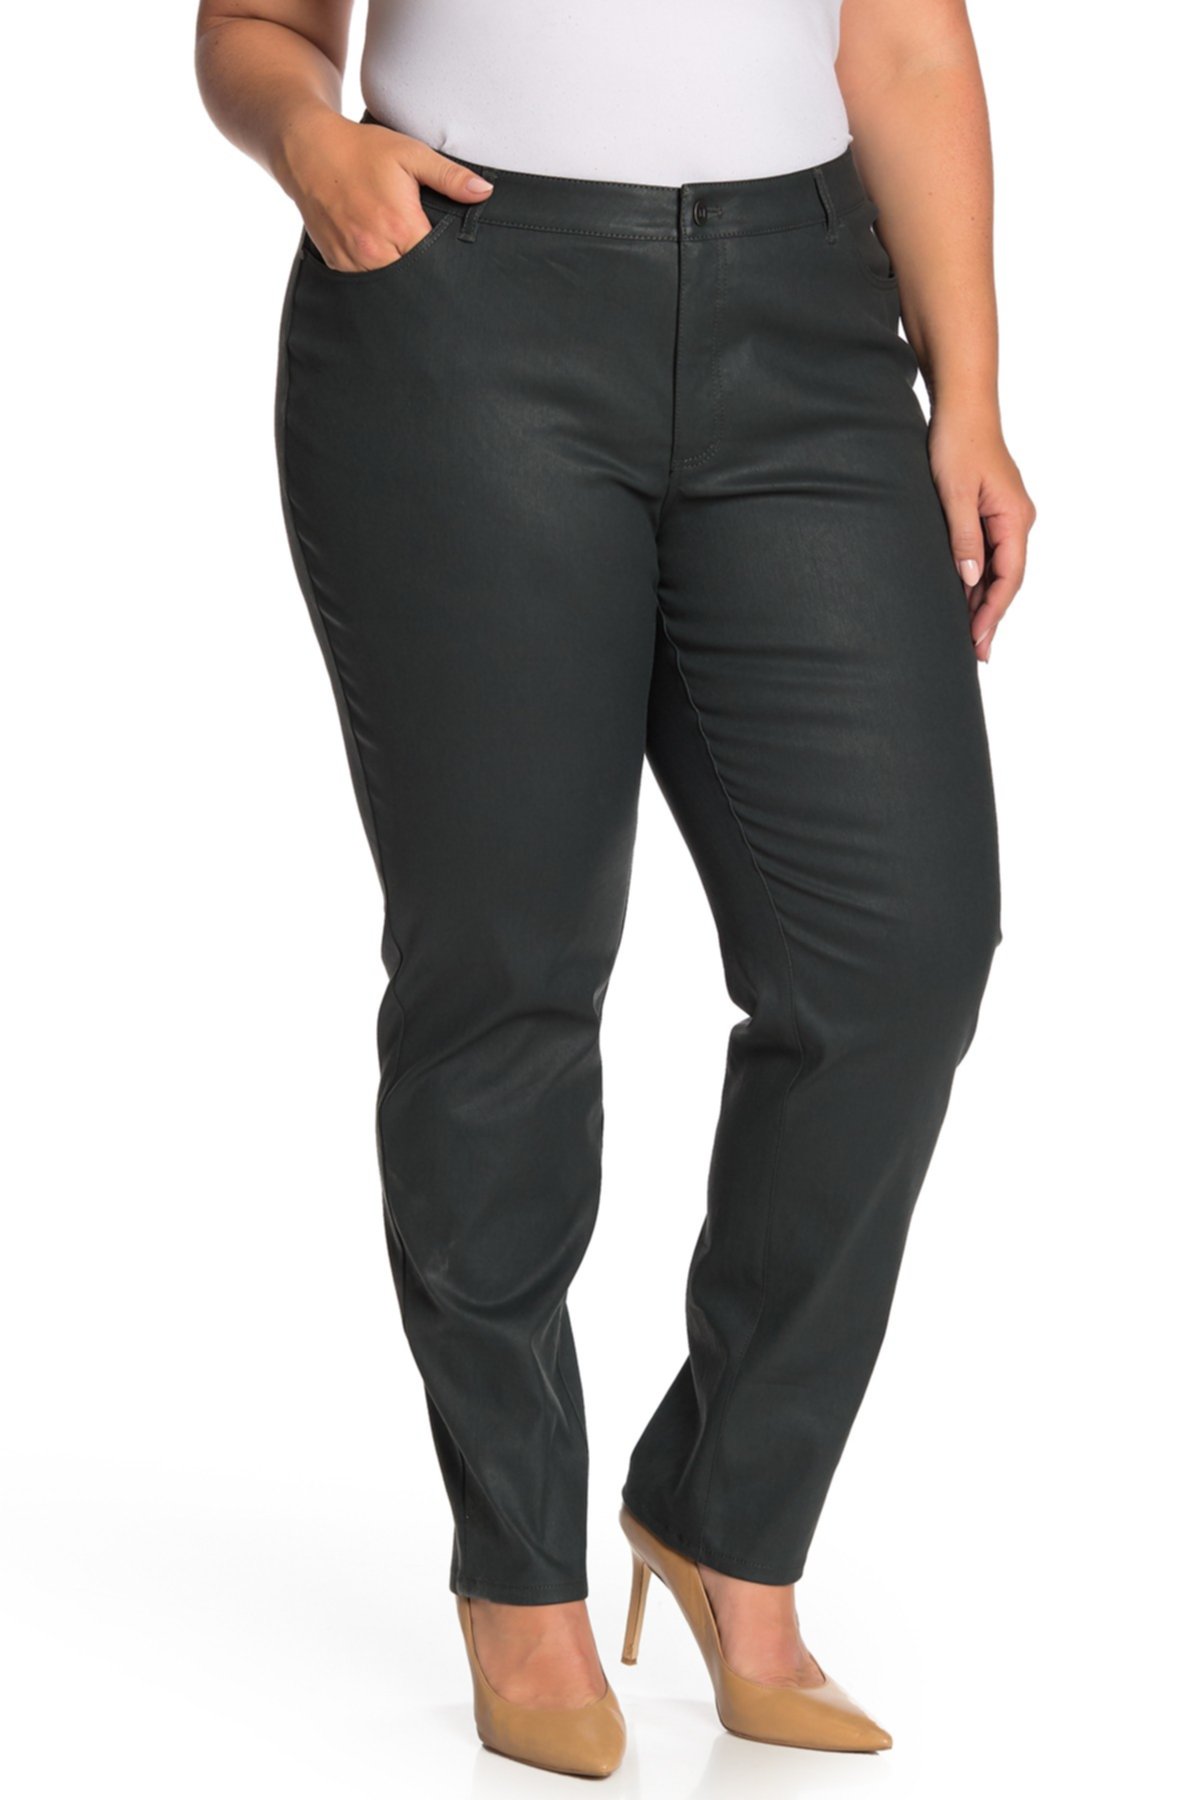 Пышные облегающие джинсы скинни (плюс размер) Lafayette 148 New York